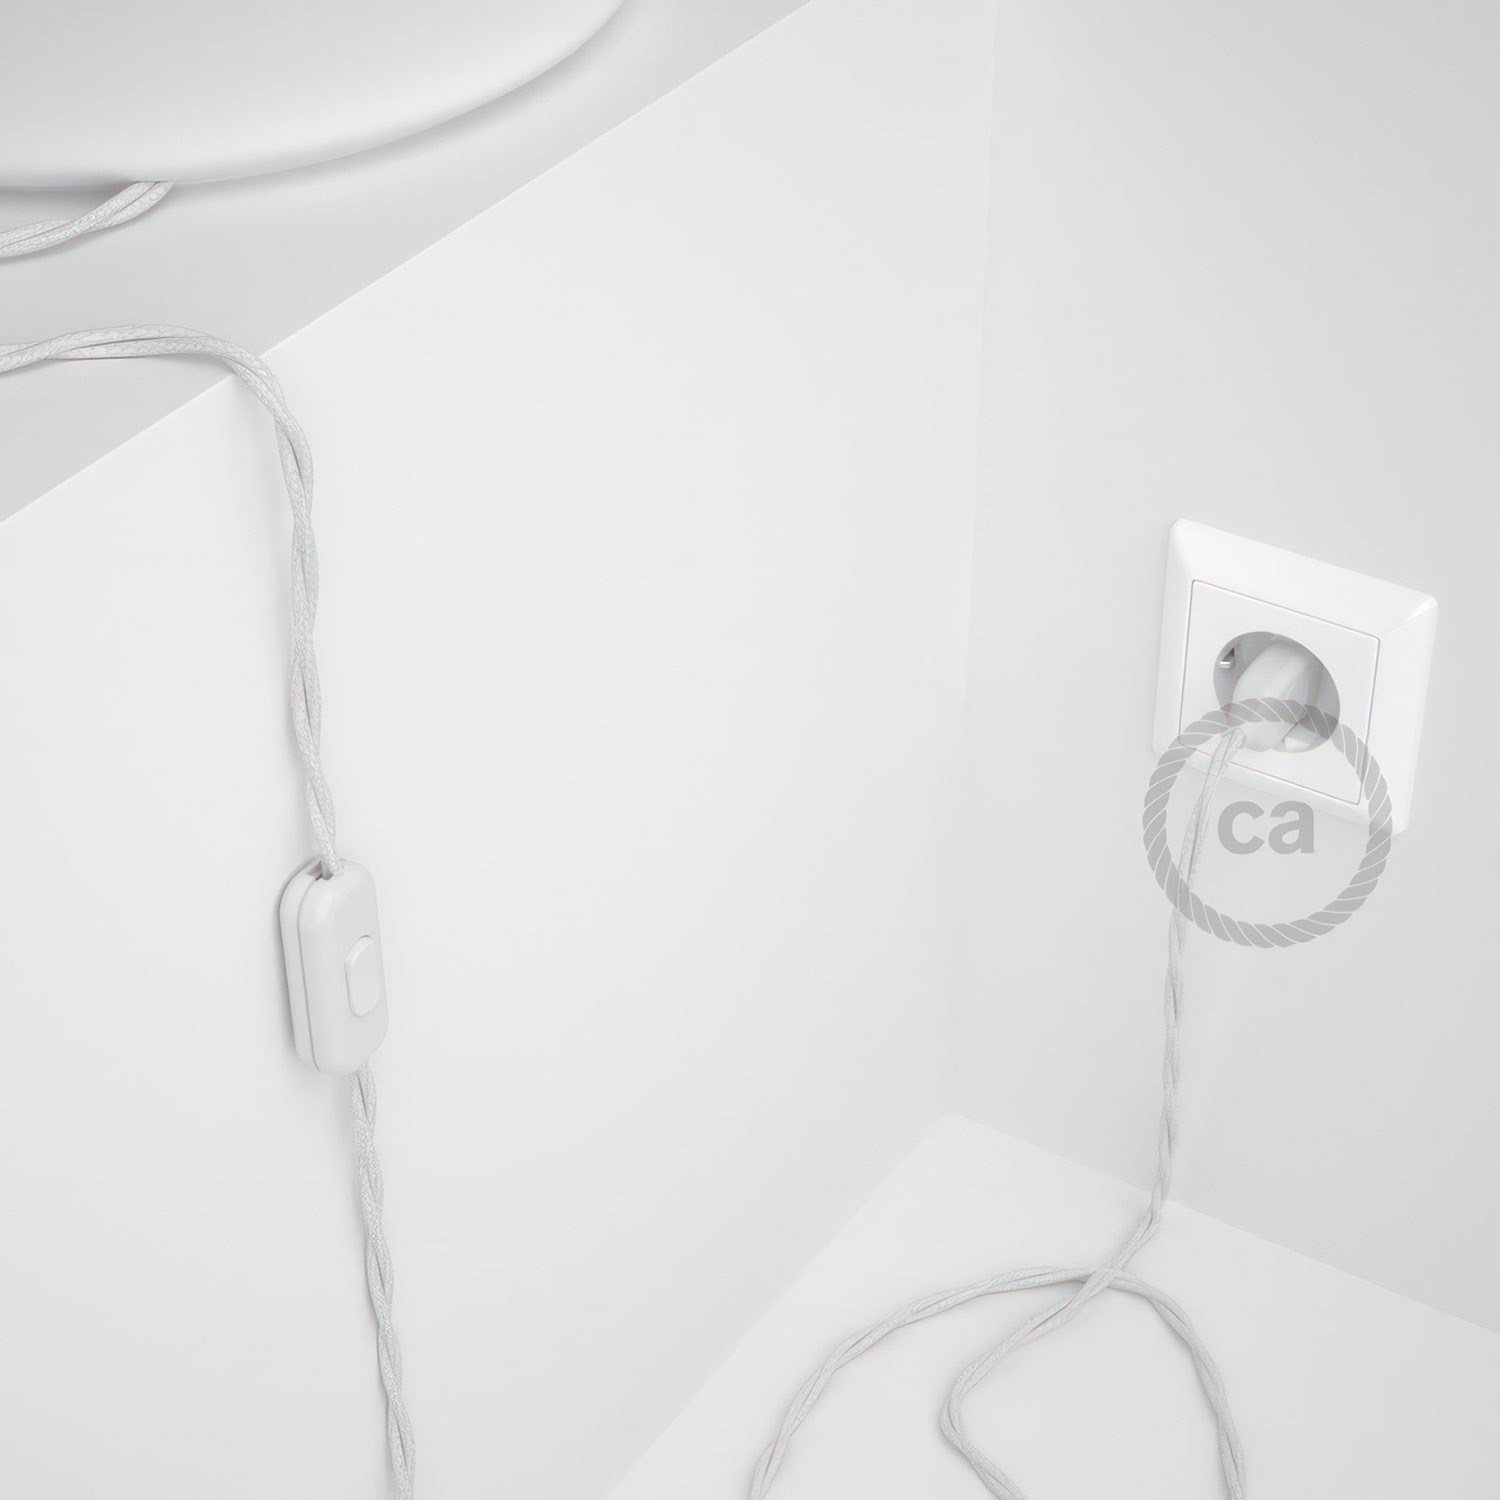 Cableado para lámpara, cable TC01 Algodón Blanco 1,8m. Elige tu el color de la clavija y del interruptor!